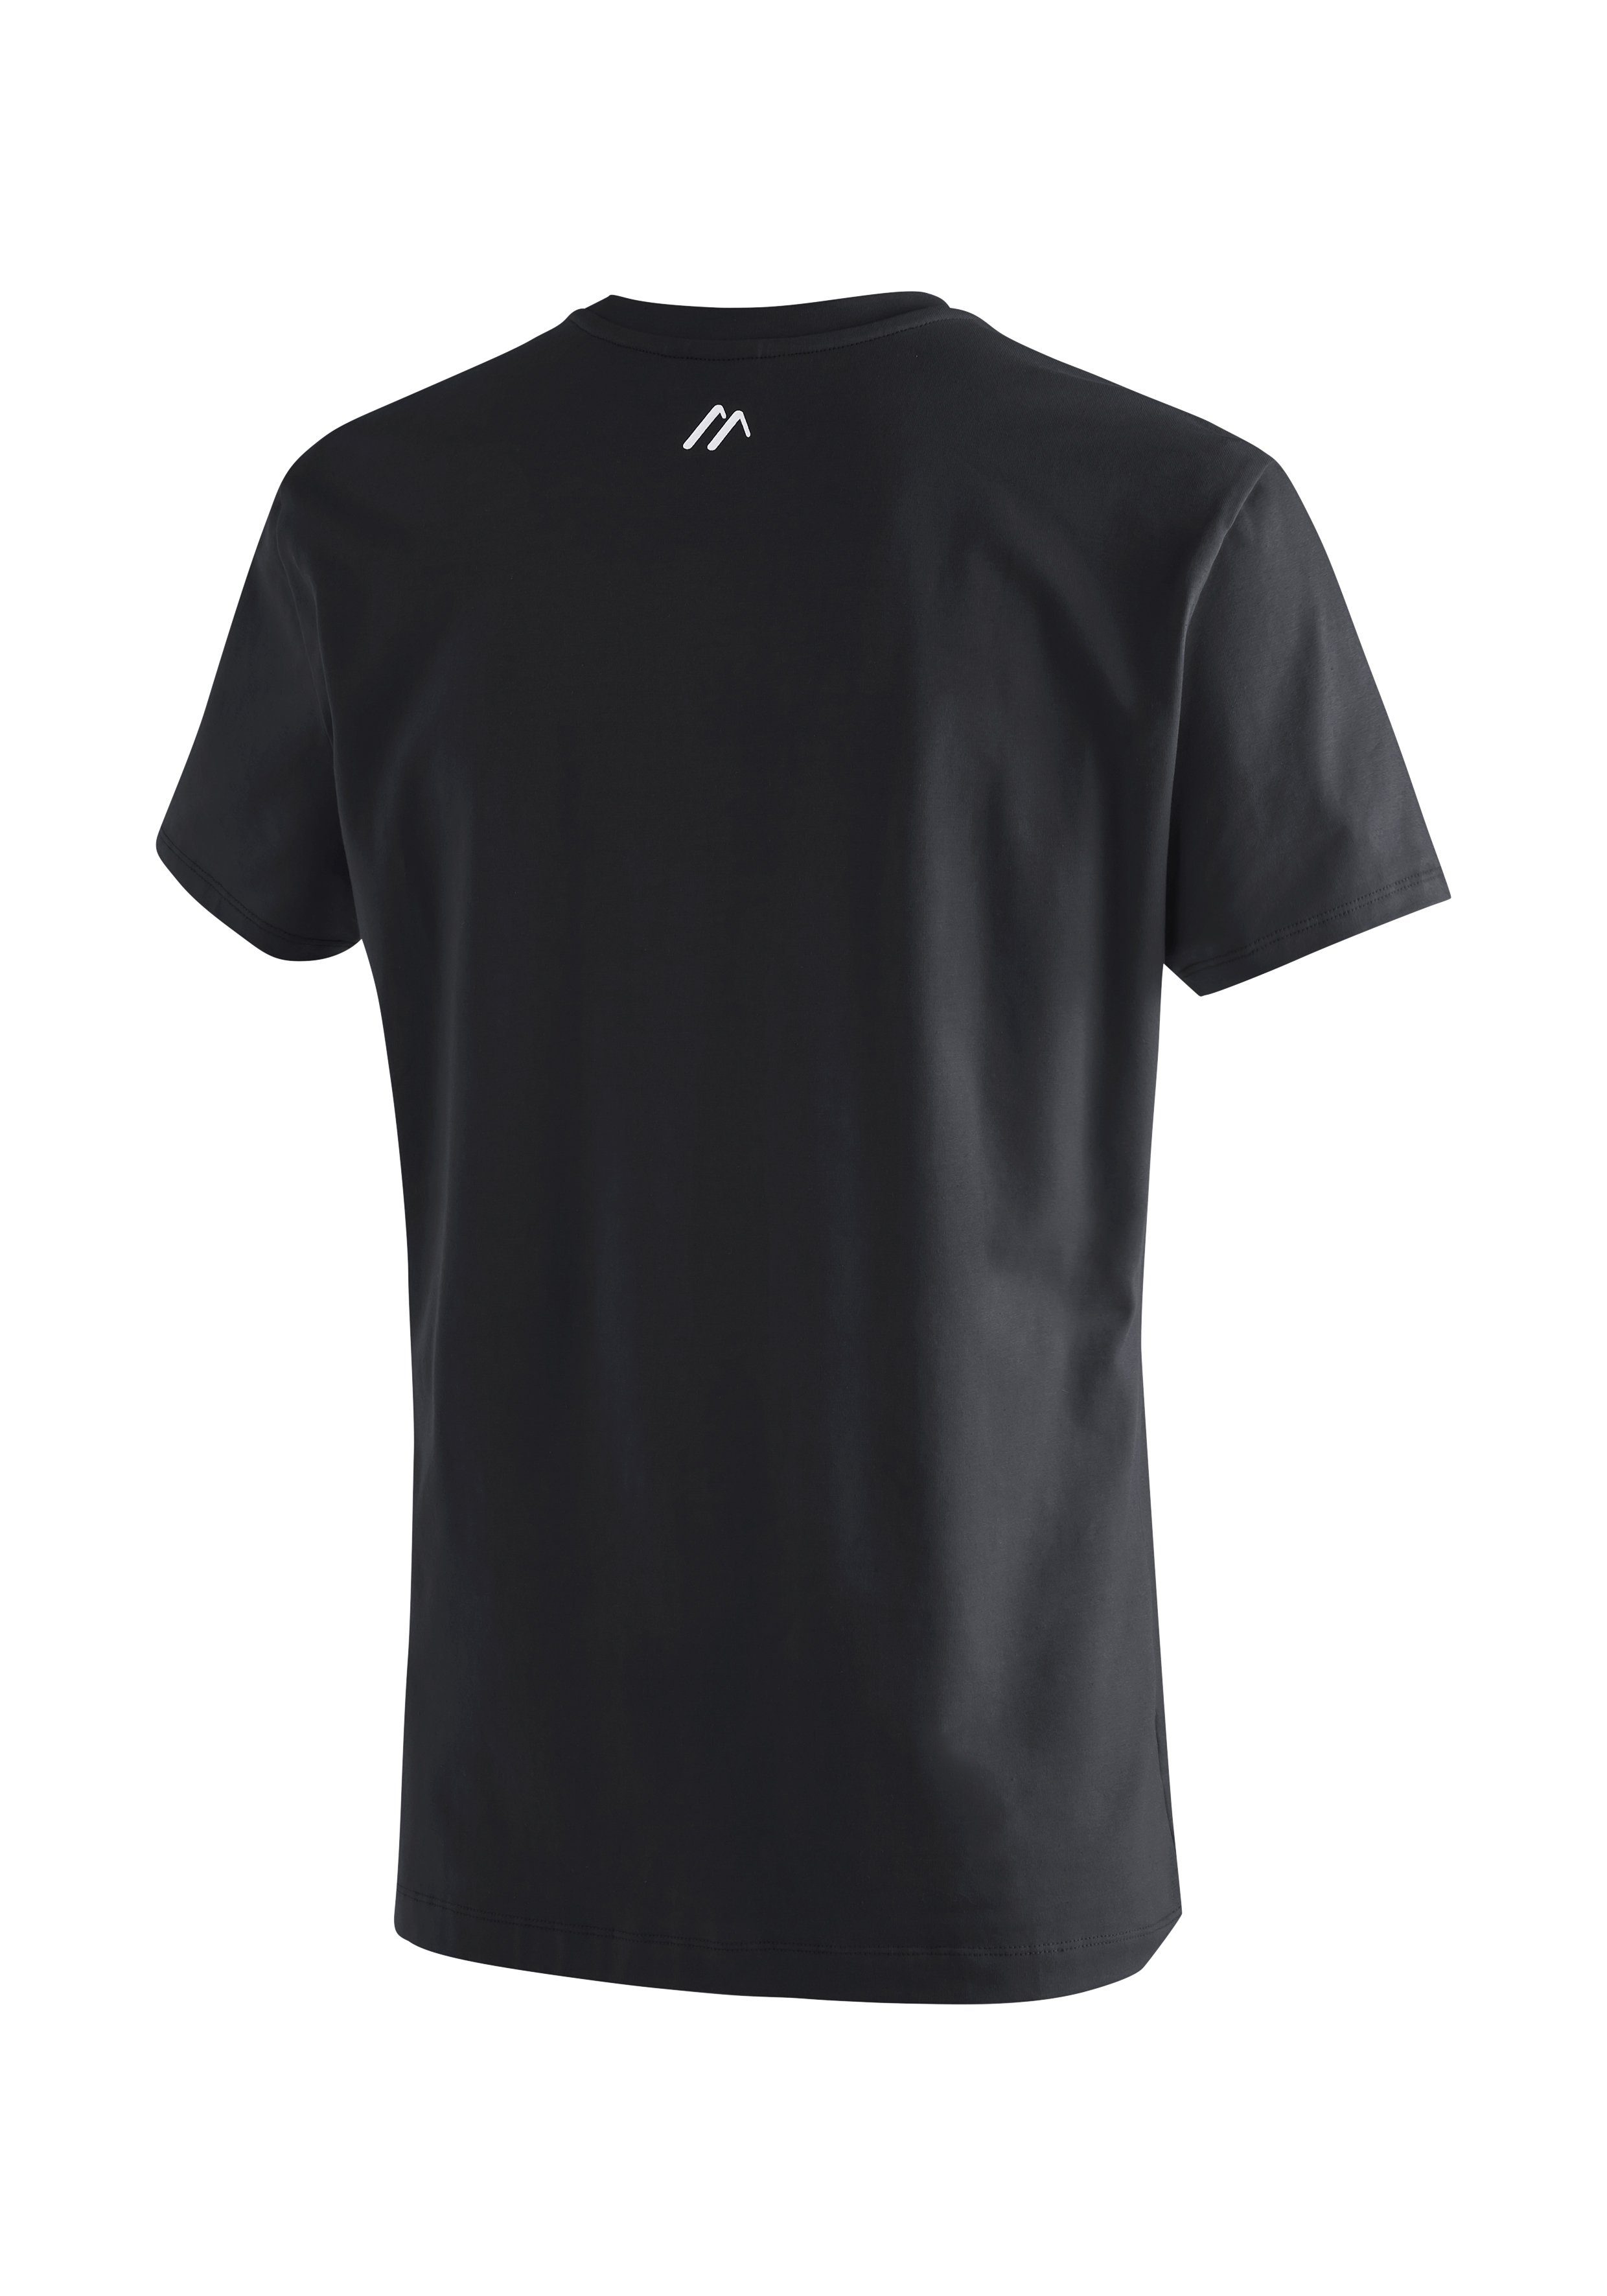 Sports Maier Tee Vielseitiges MS Material Rundhalsshirt schwarz Funktionsshirt aus M elastischem